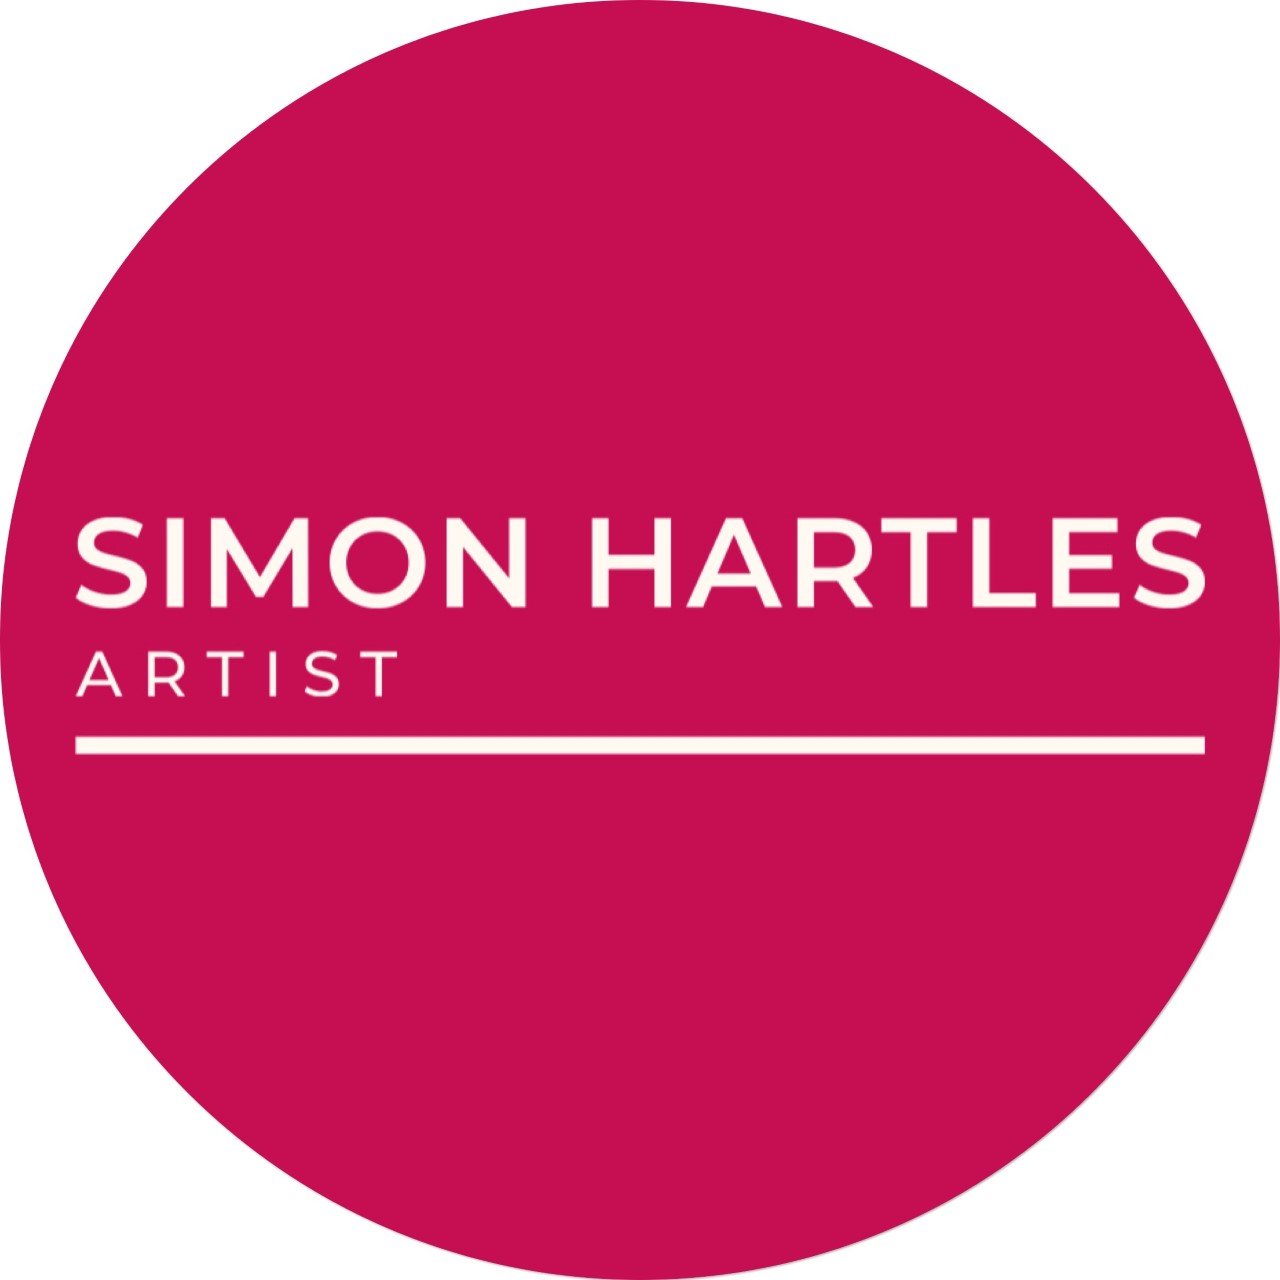 Simon Hartles Artist